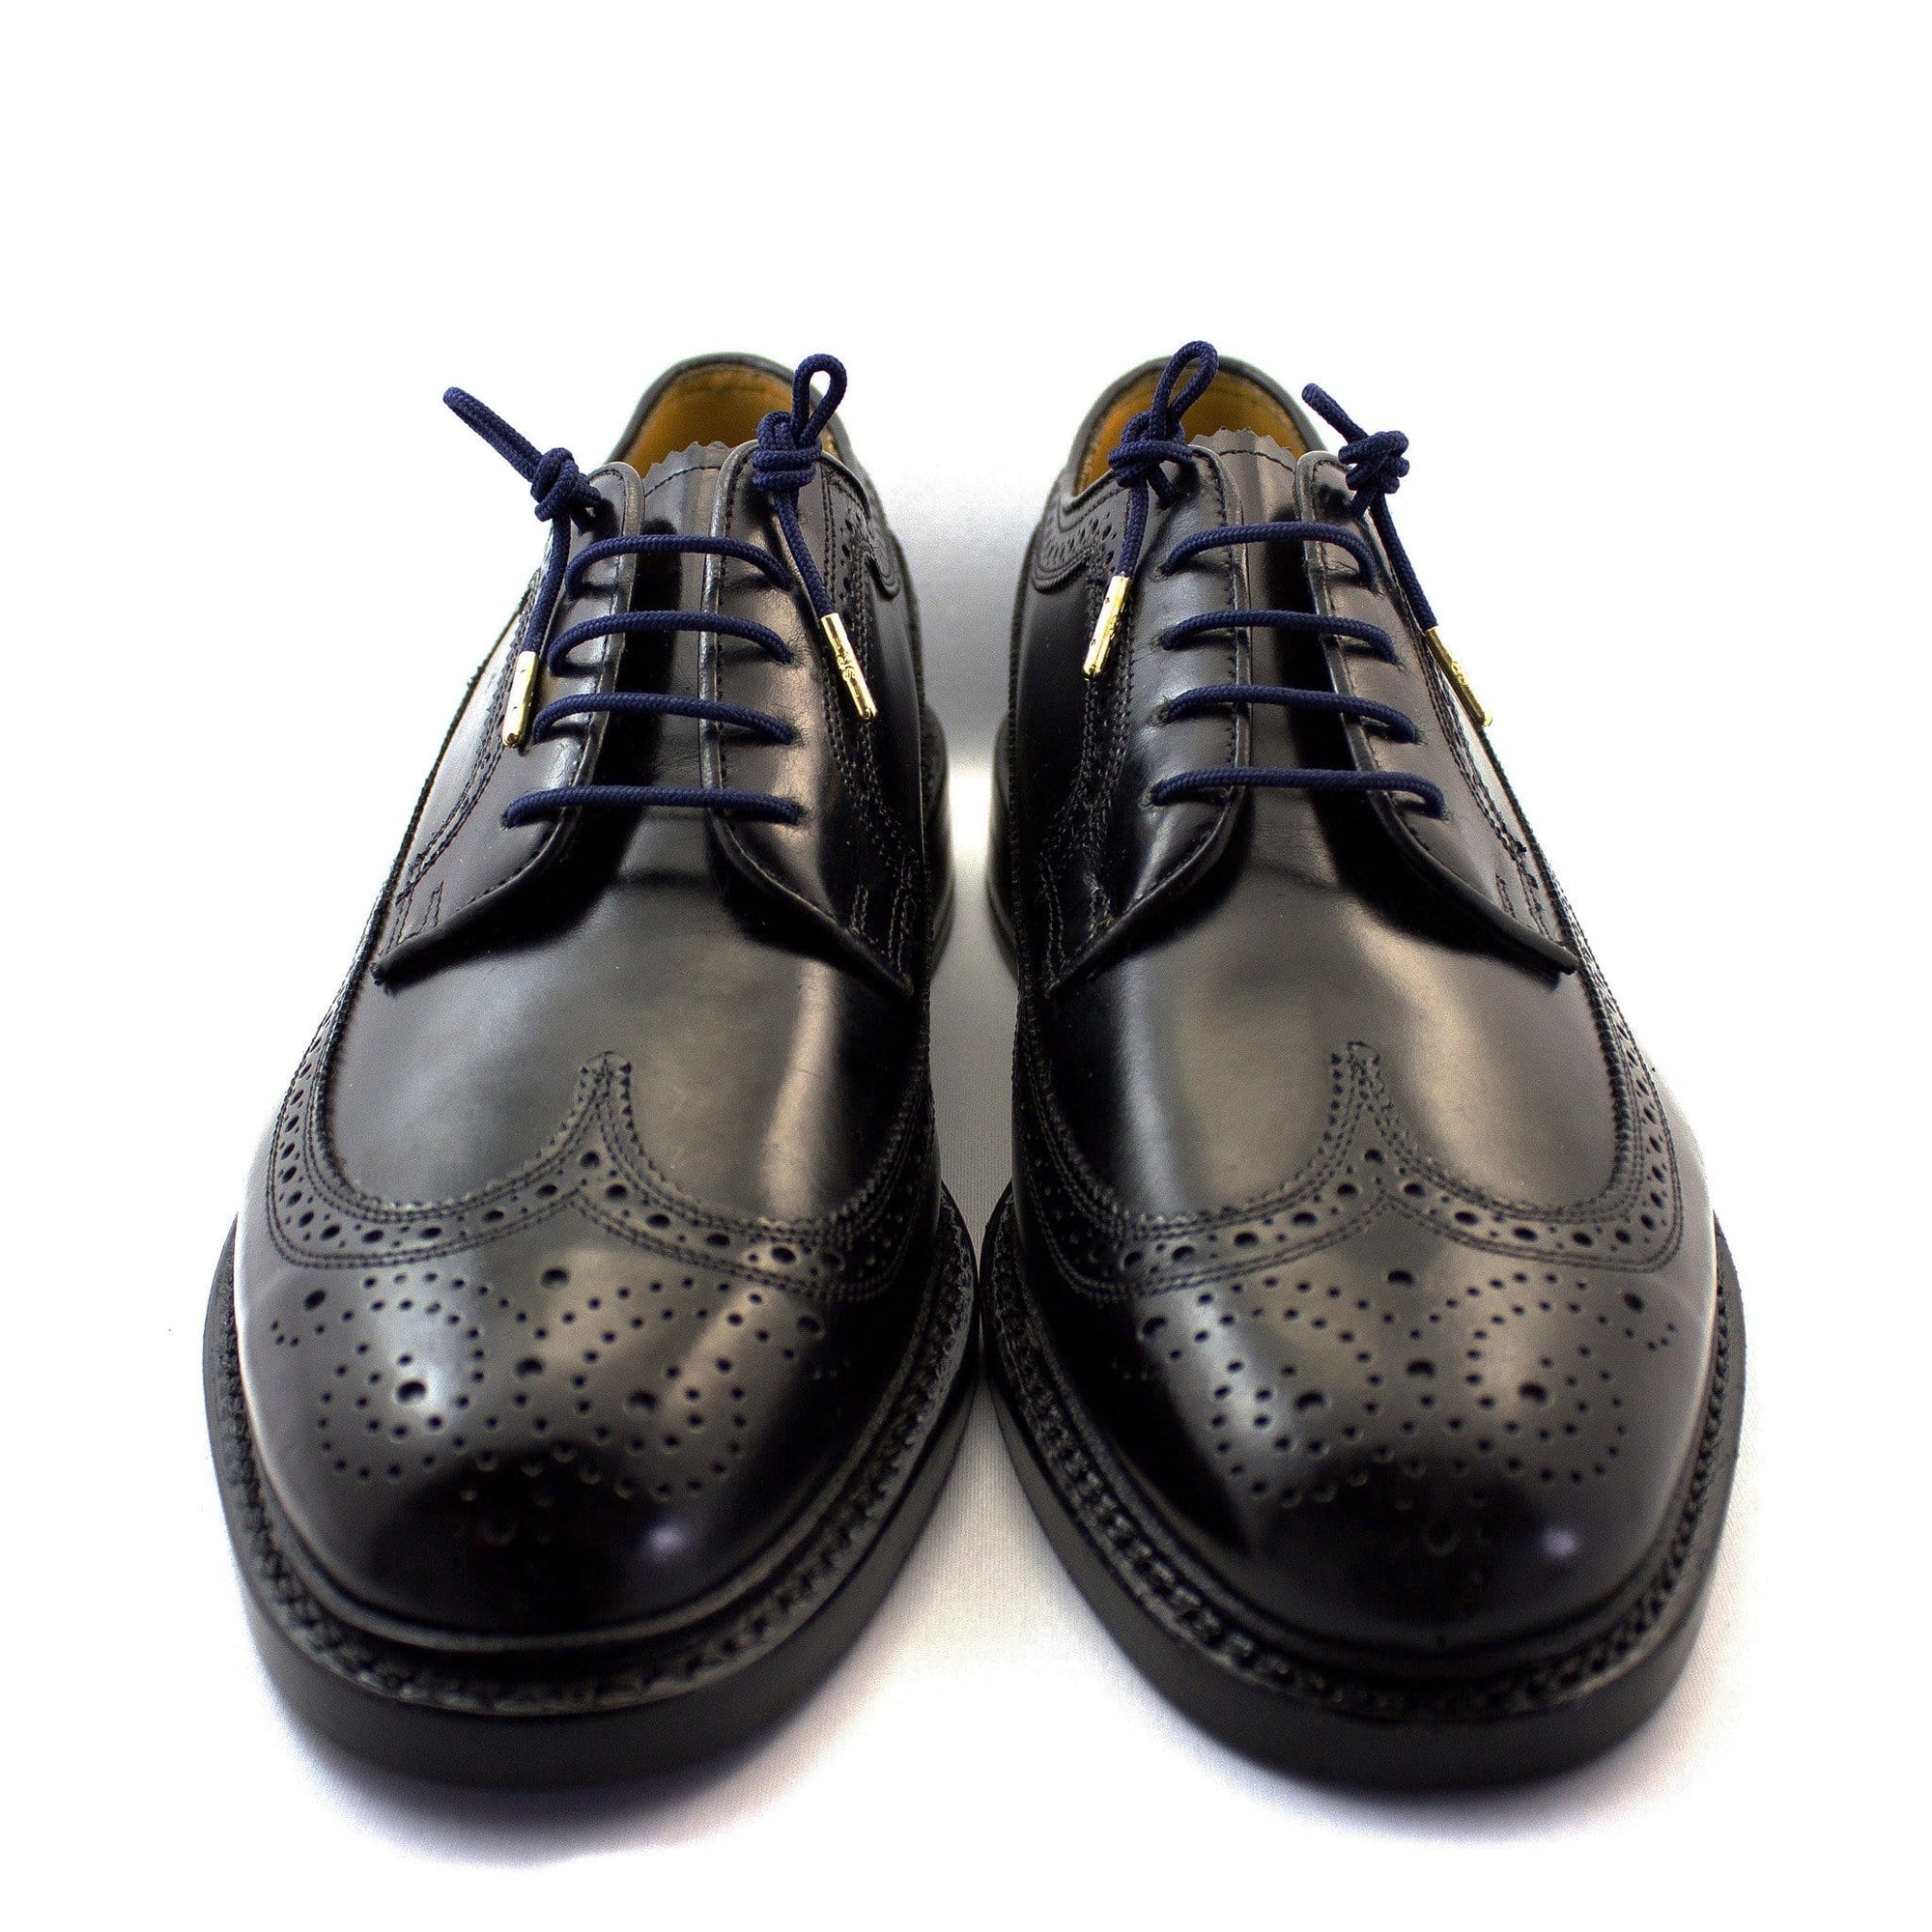 Navy blue laces for dress shoes, Length: 32"/81cm-Stolen Riches